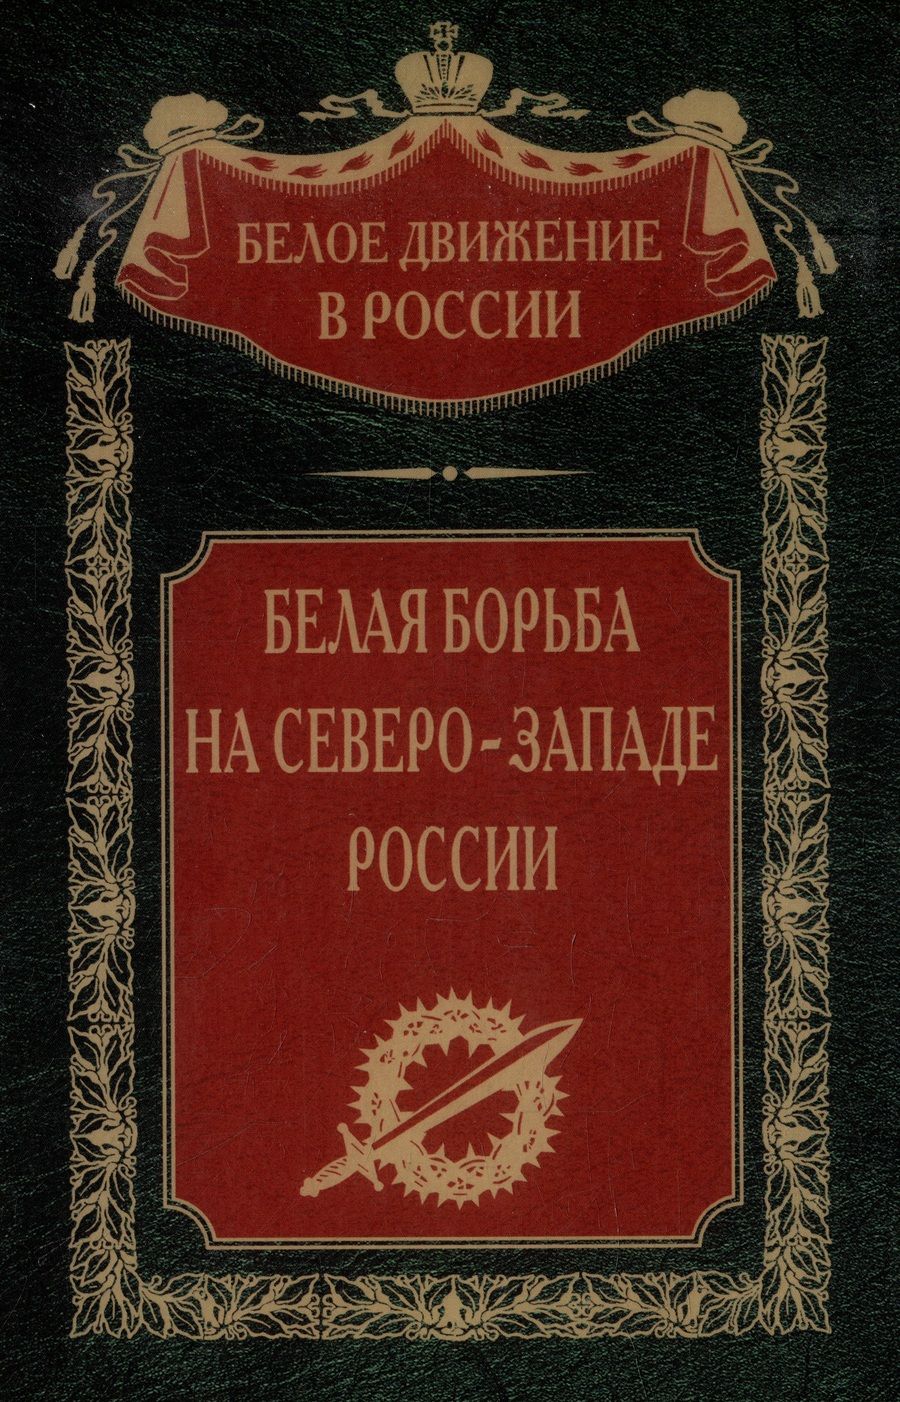 Обложка книги "Белая борьба на Северо-Западе России"